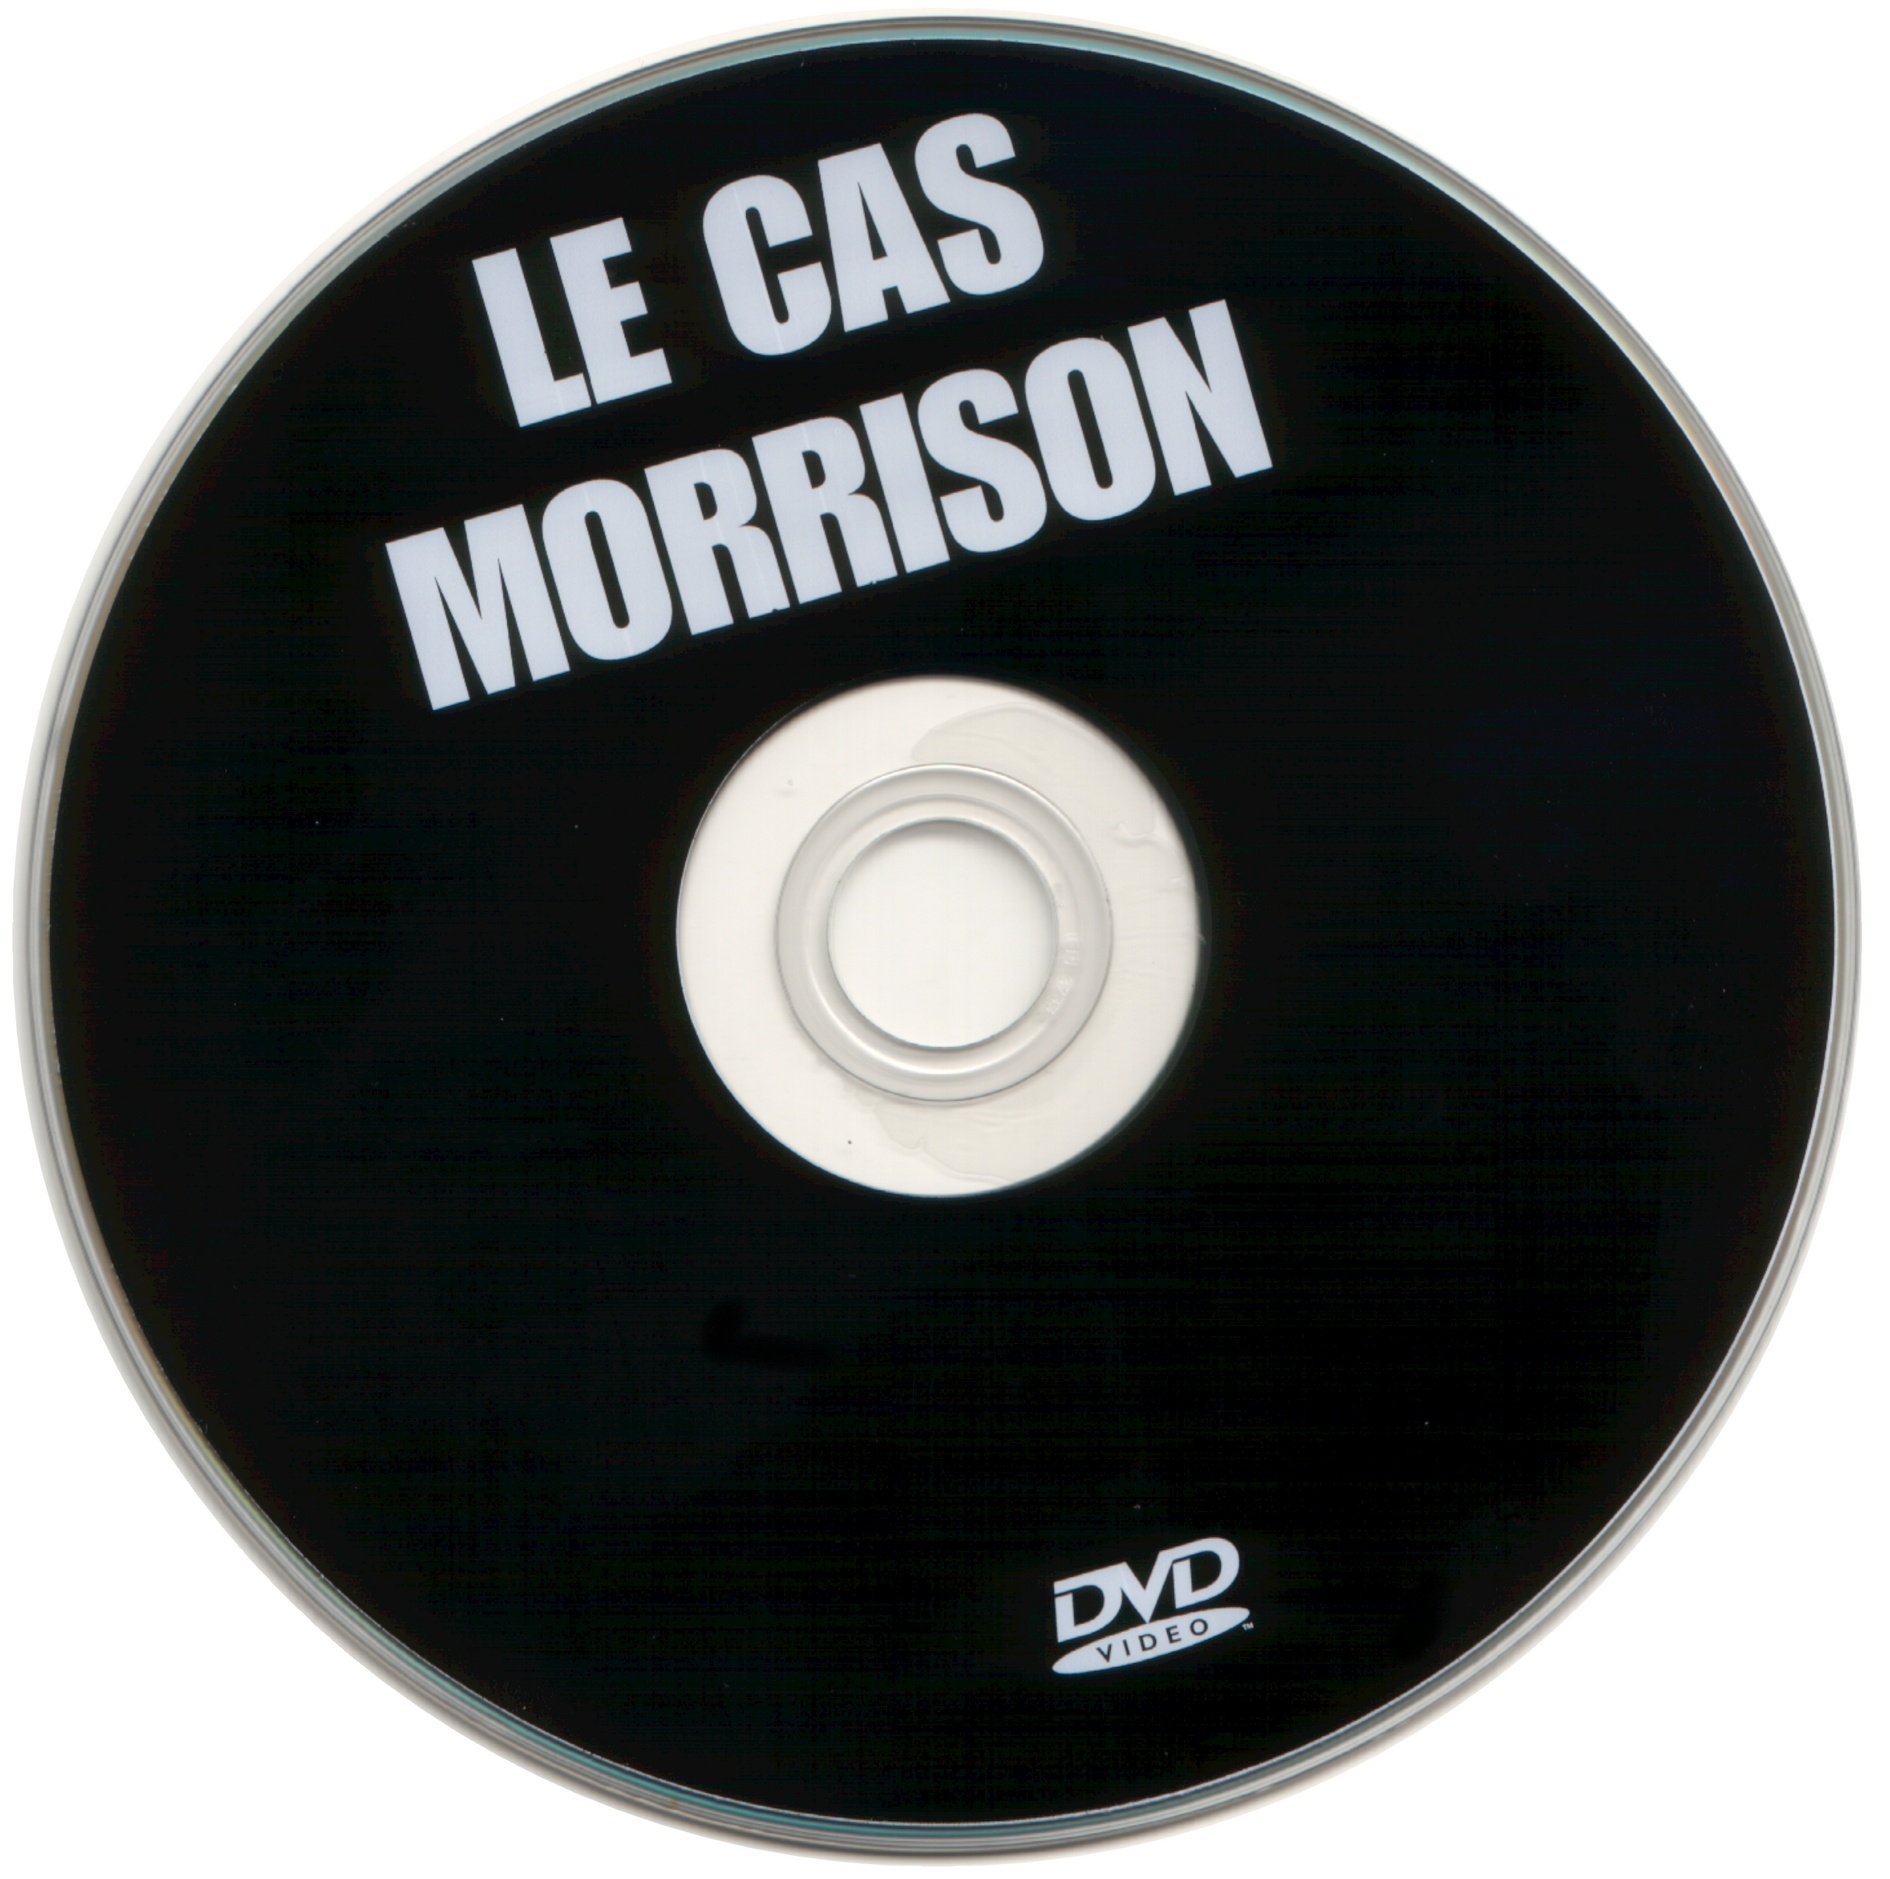 Le cas Morrison